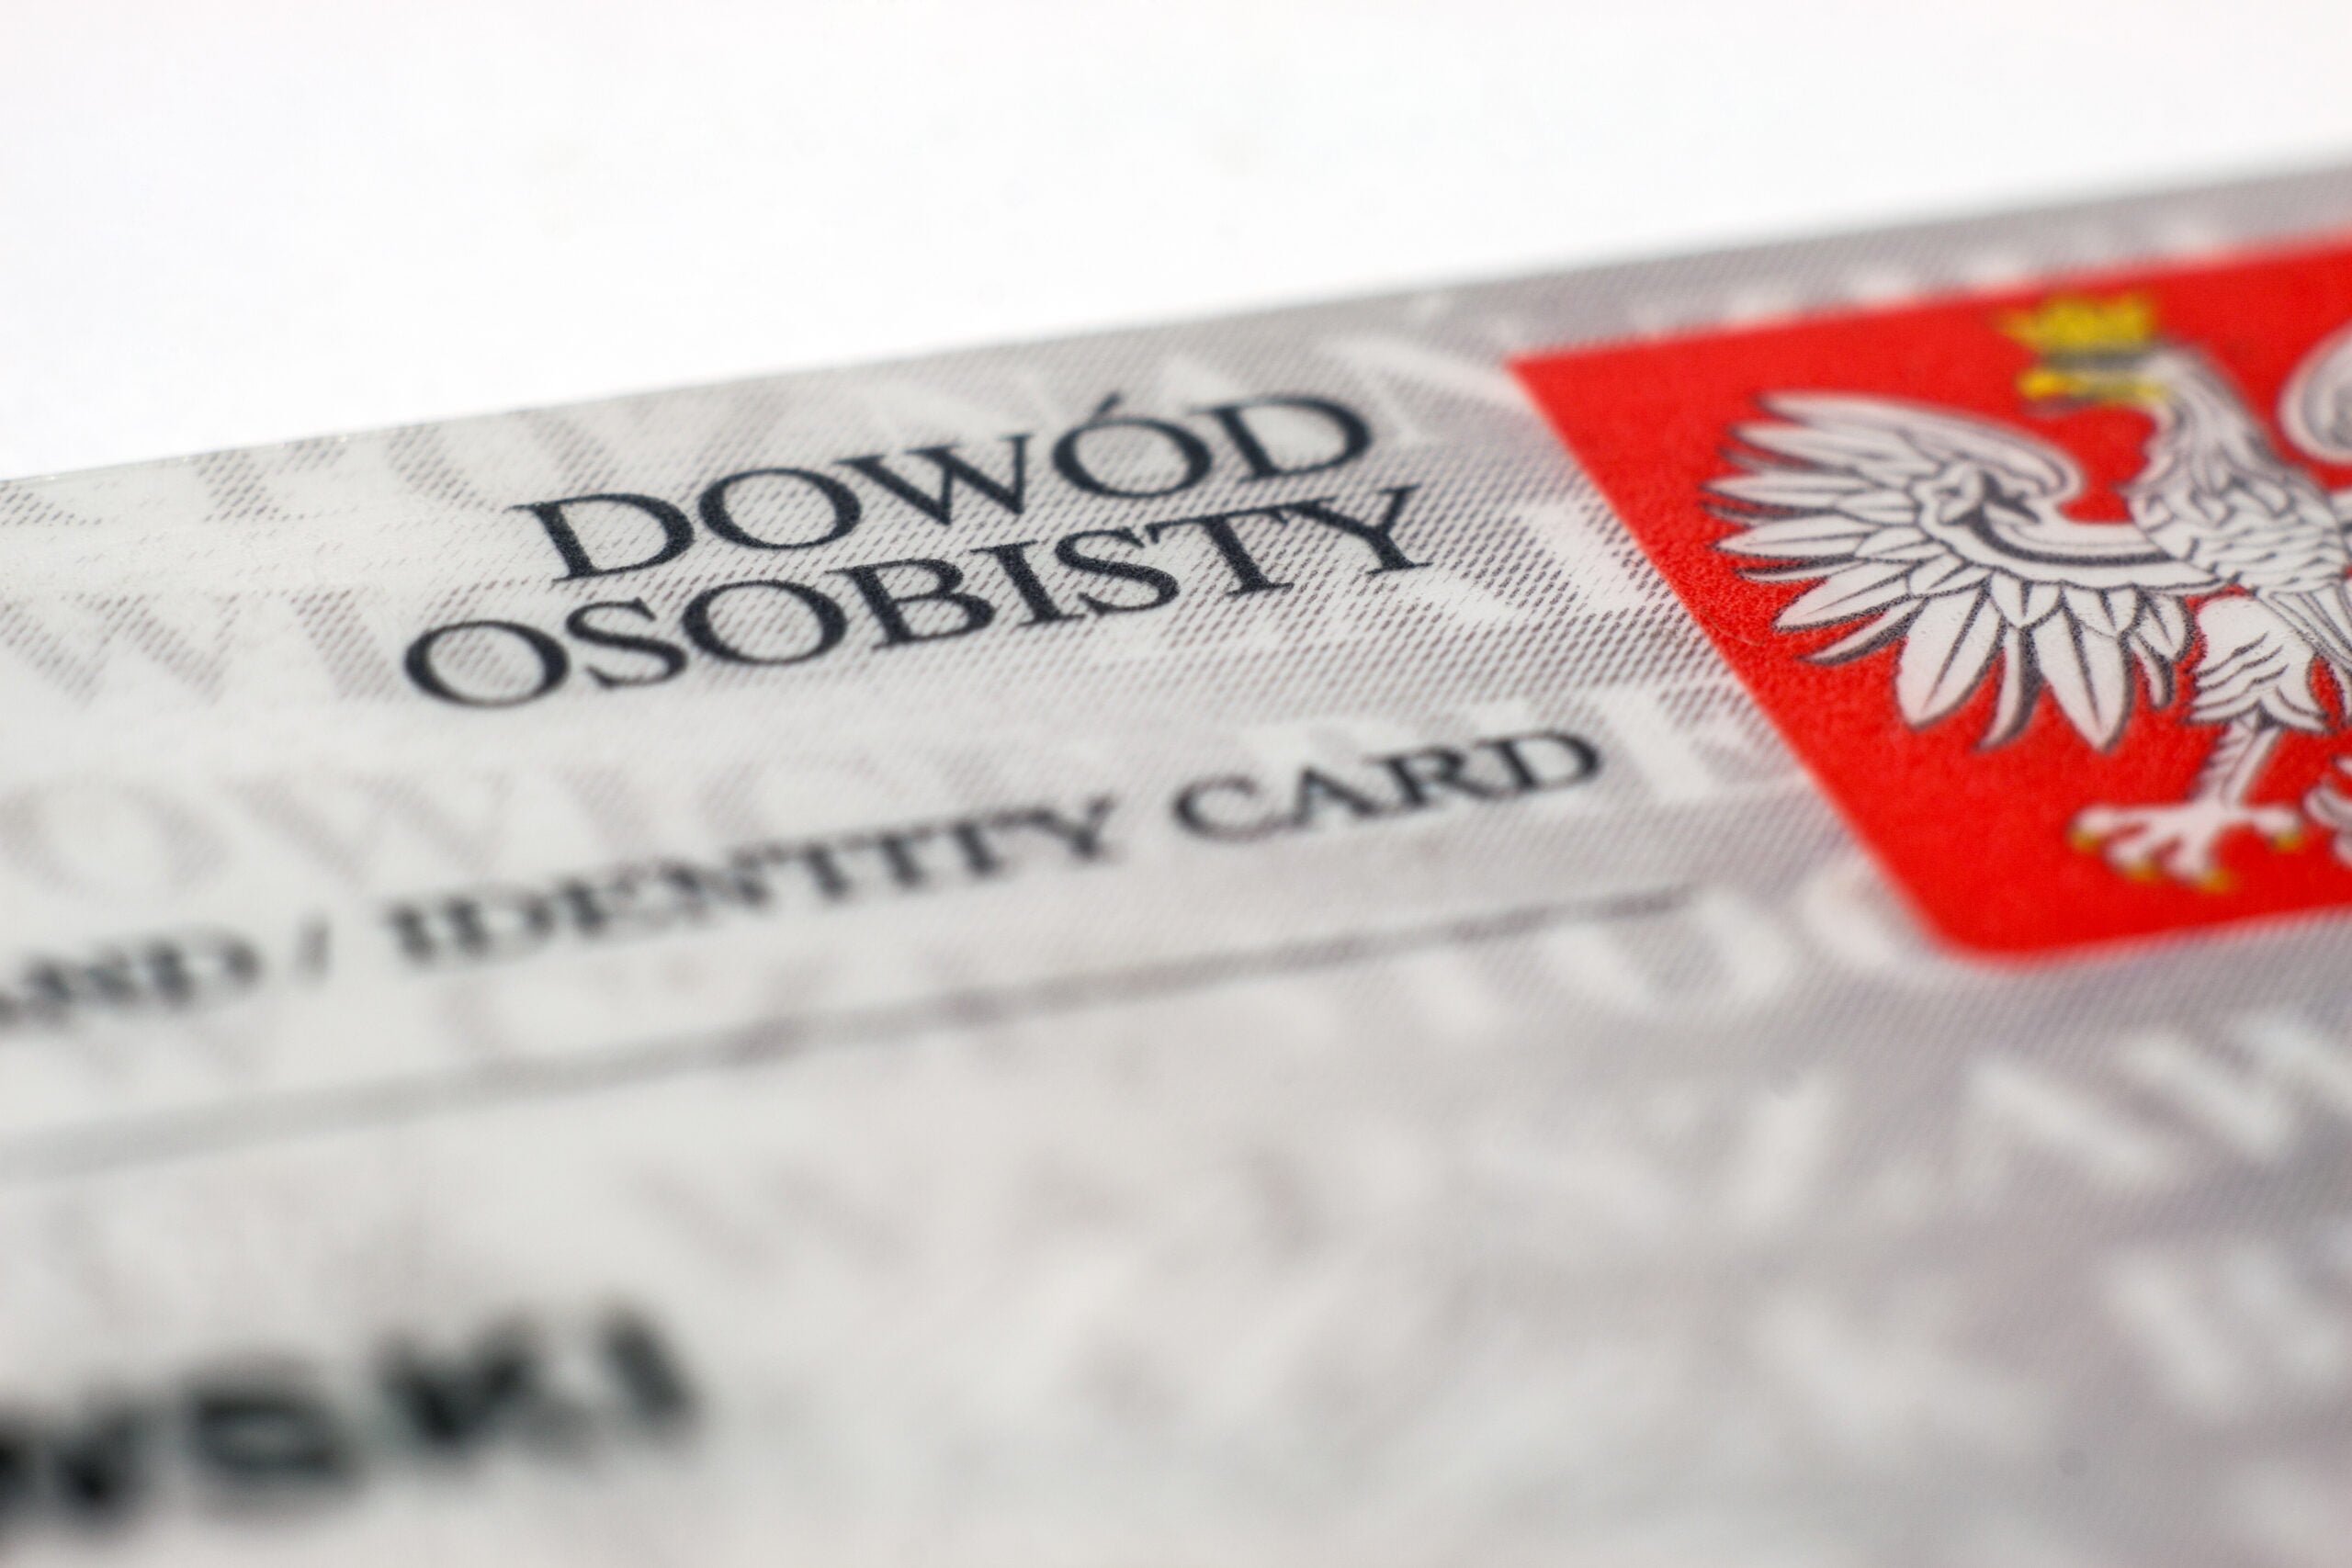 Fragment polskiego dowodu osobistego z wypukłym napisem "DOWÓD OSOBISTY" oraz orłem w koronie na czerwonym tle, symbolizującym godło Polski.